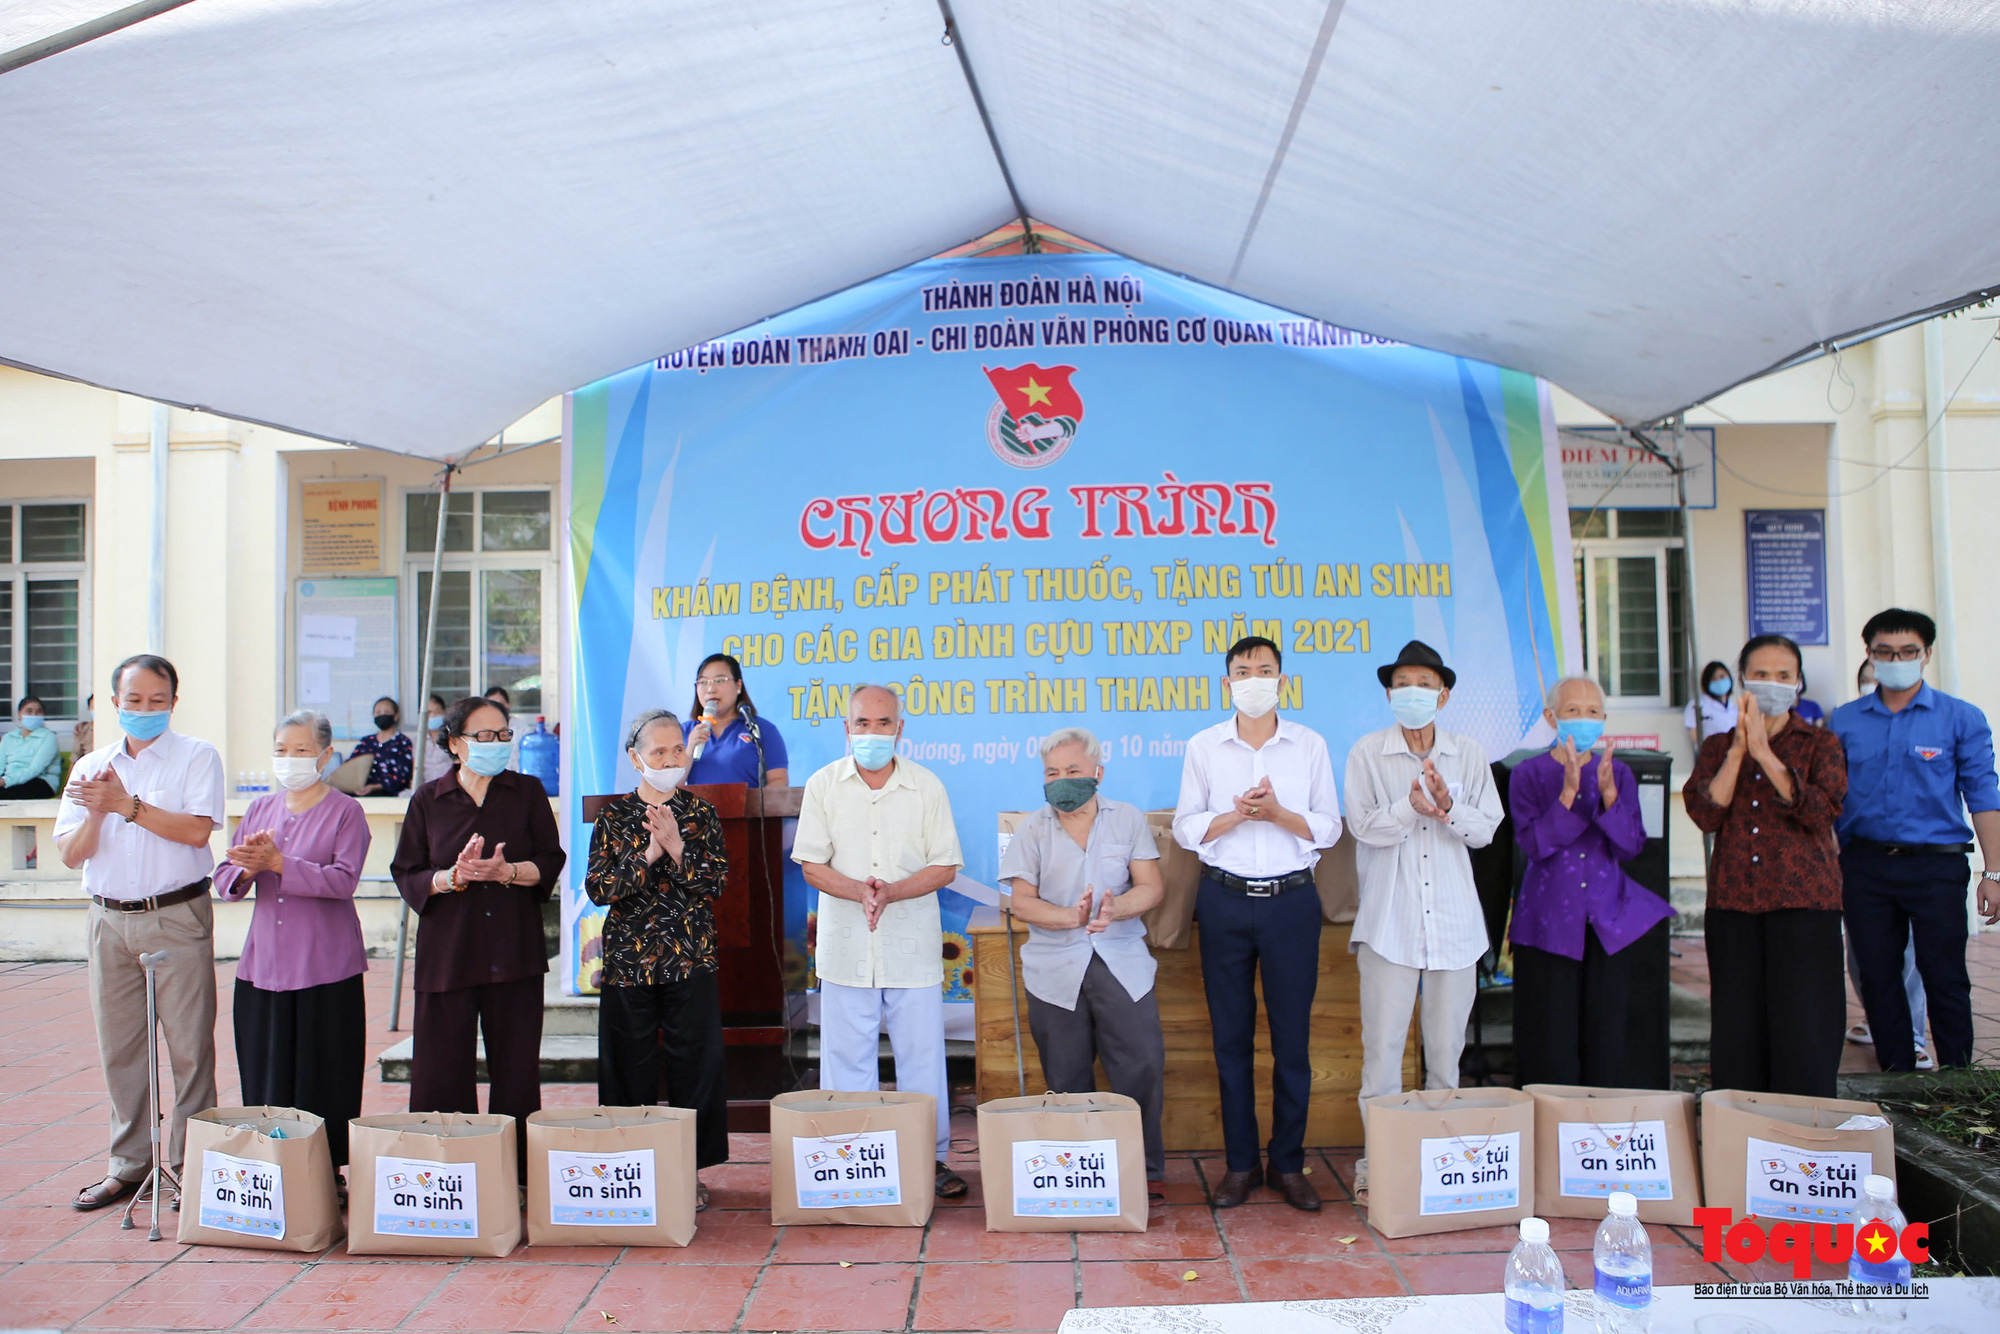 Thành đoàn Hà Nội tổ chức khám bệnh, tặng túi an sinh cho các gia đình cựu Thanh niên xung phong - Ảnh 1.